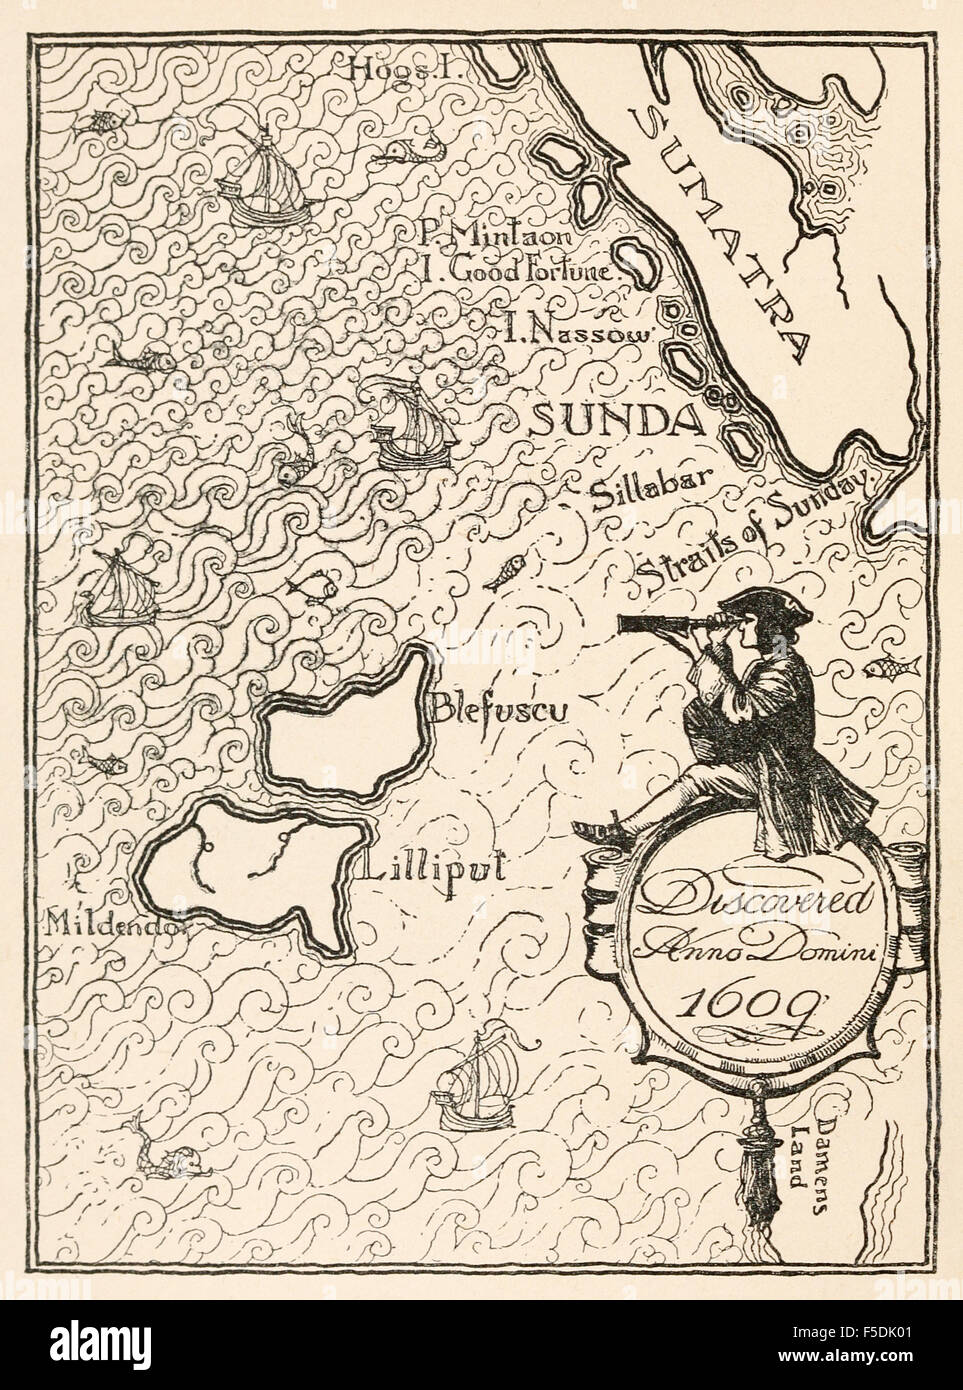 "Karte von Lilliput" aus "Gullivers Reisen in Lilliput und Brobdingnag" von Jonathan Swift (1667-1745), Illustration von Percy Angelo Staynes (1879-1953). Siehe Beschreibung für mehr Informationen. Stockfoto